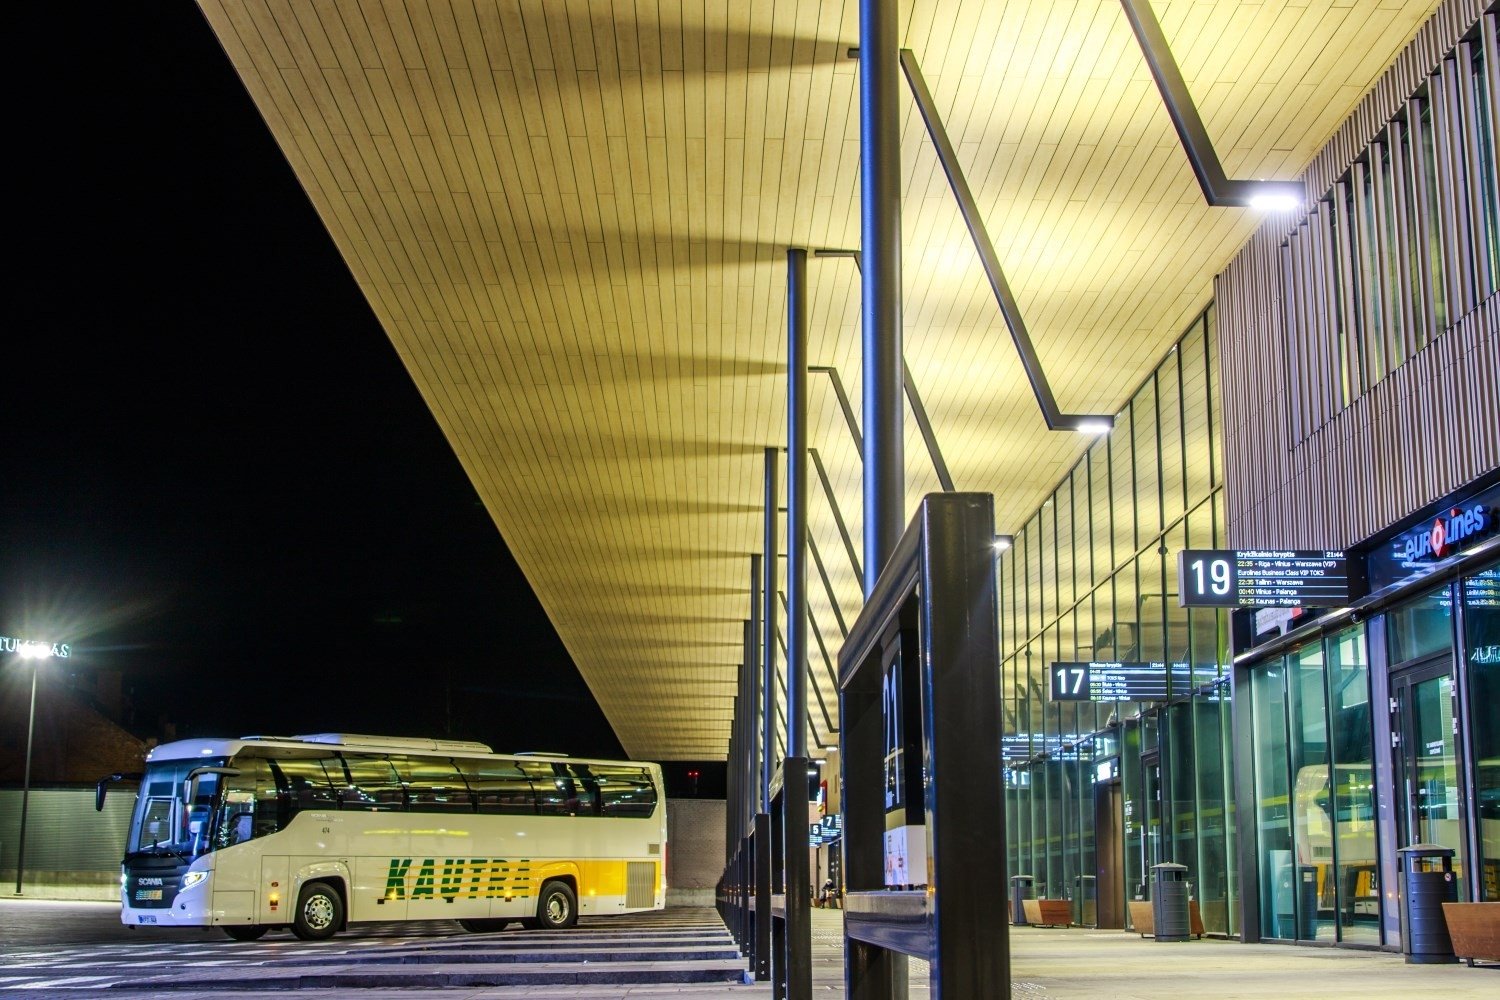 Viena didžiausių keleivių pervežimo bendrovių „Kautra“ skelbia nuo antradienio atnaujinanti susisiekimą tarpmiestiniais autobusais.